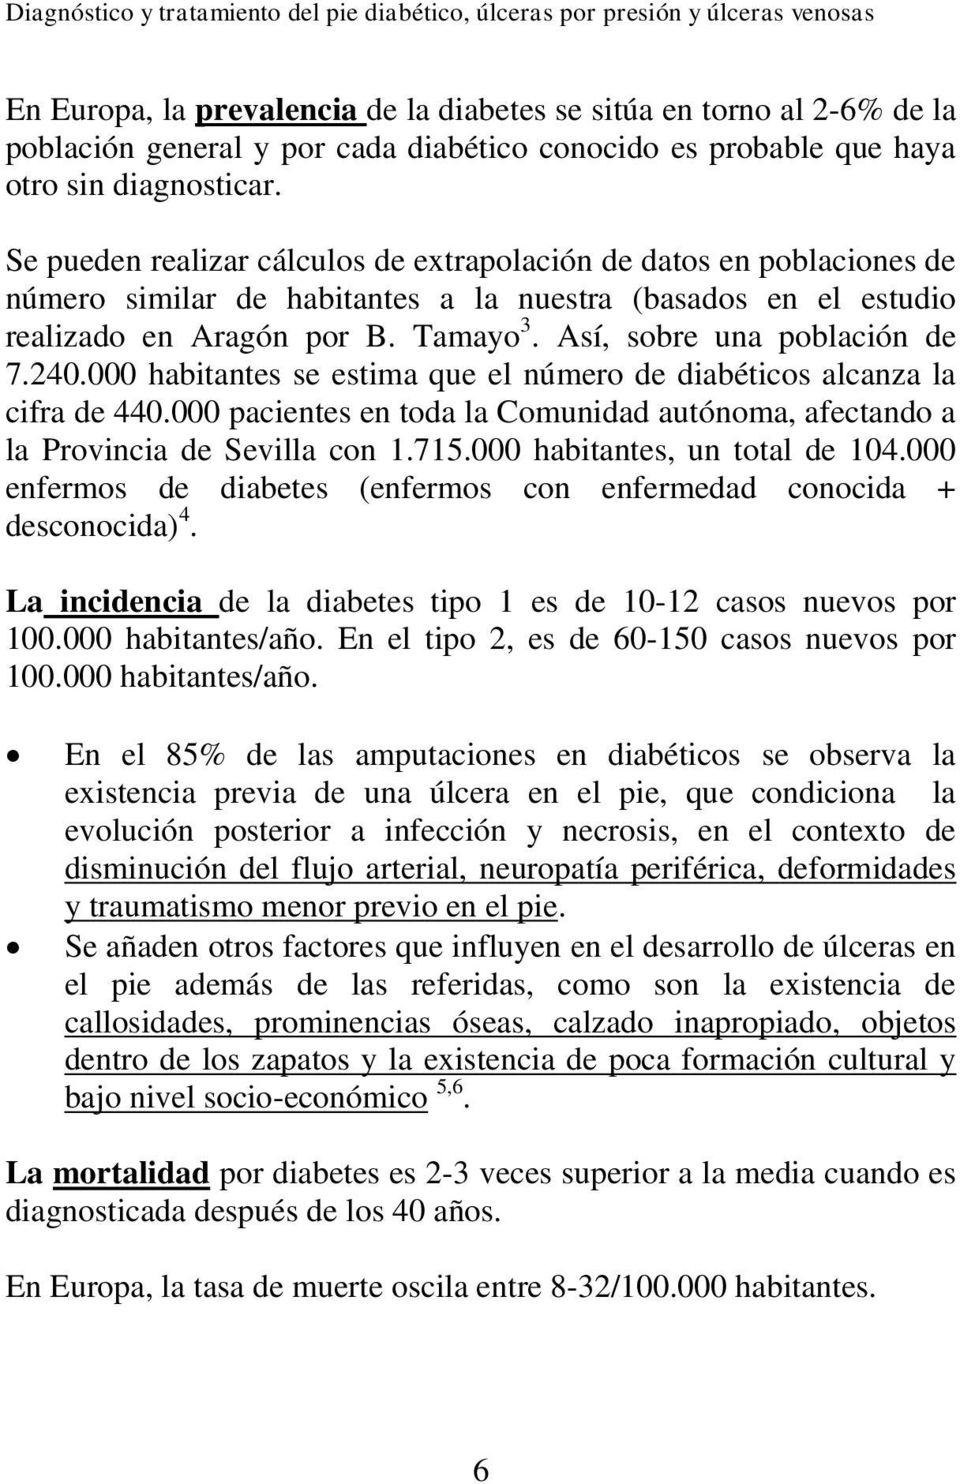 Así, sobre una población de 7.240.000 habitantes se estima que el número de diabéticos alcanza la cifra de 440.000 pacientes en toda la Comunidad autónoma, afectando a la Provincia de Sevilla con 1.